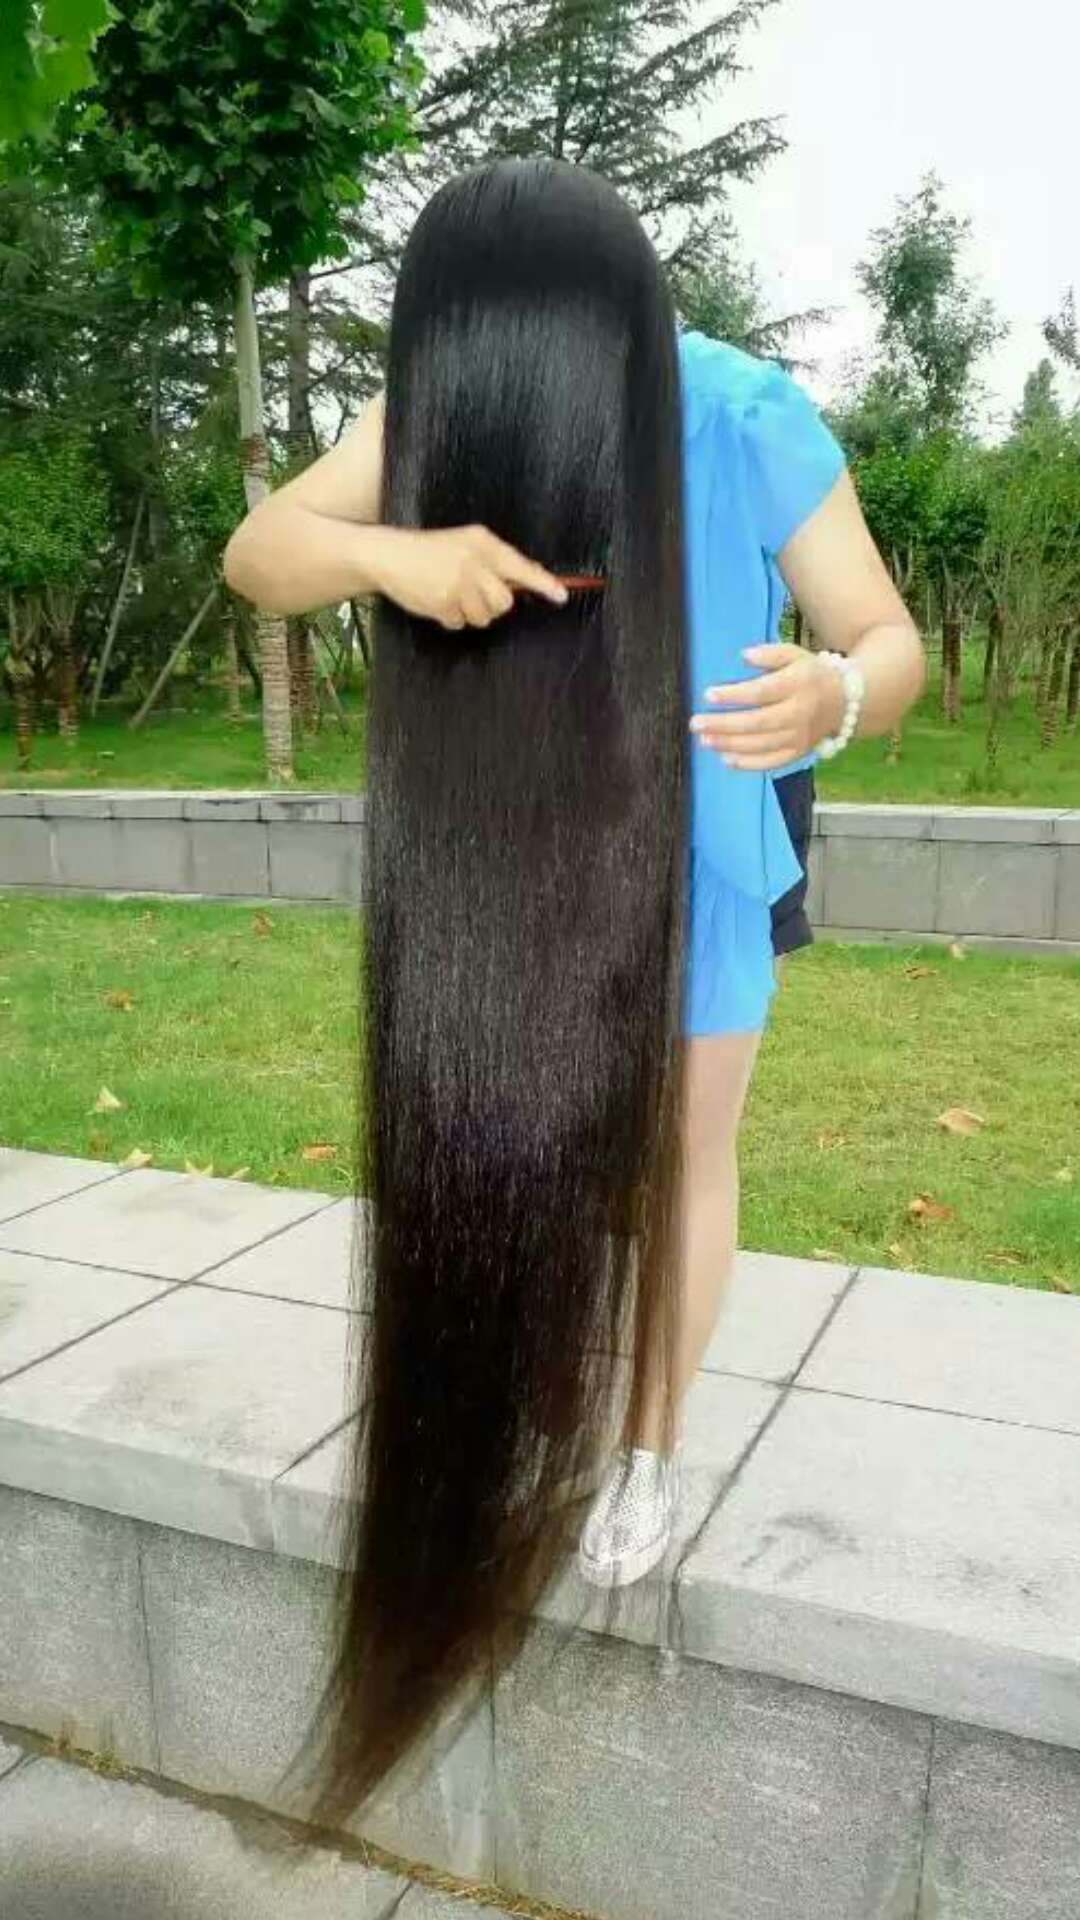 yezi from Zhengzhou has floor length long hair